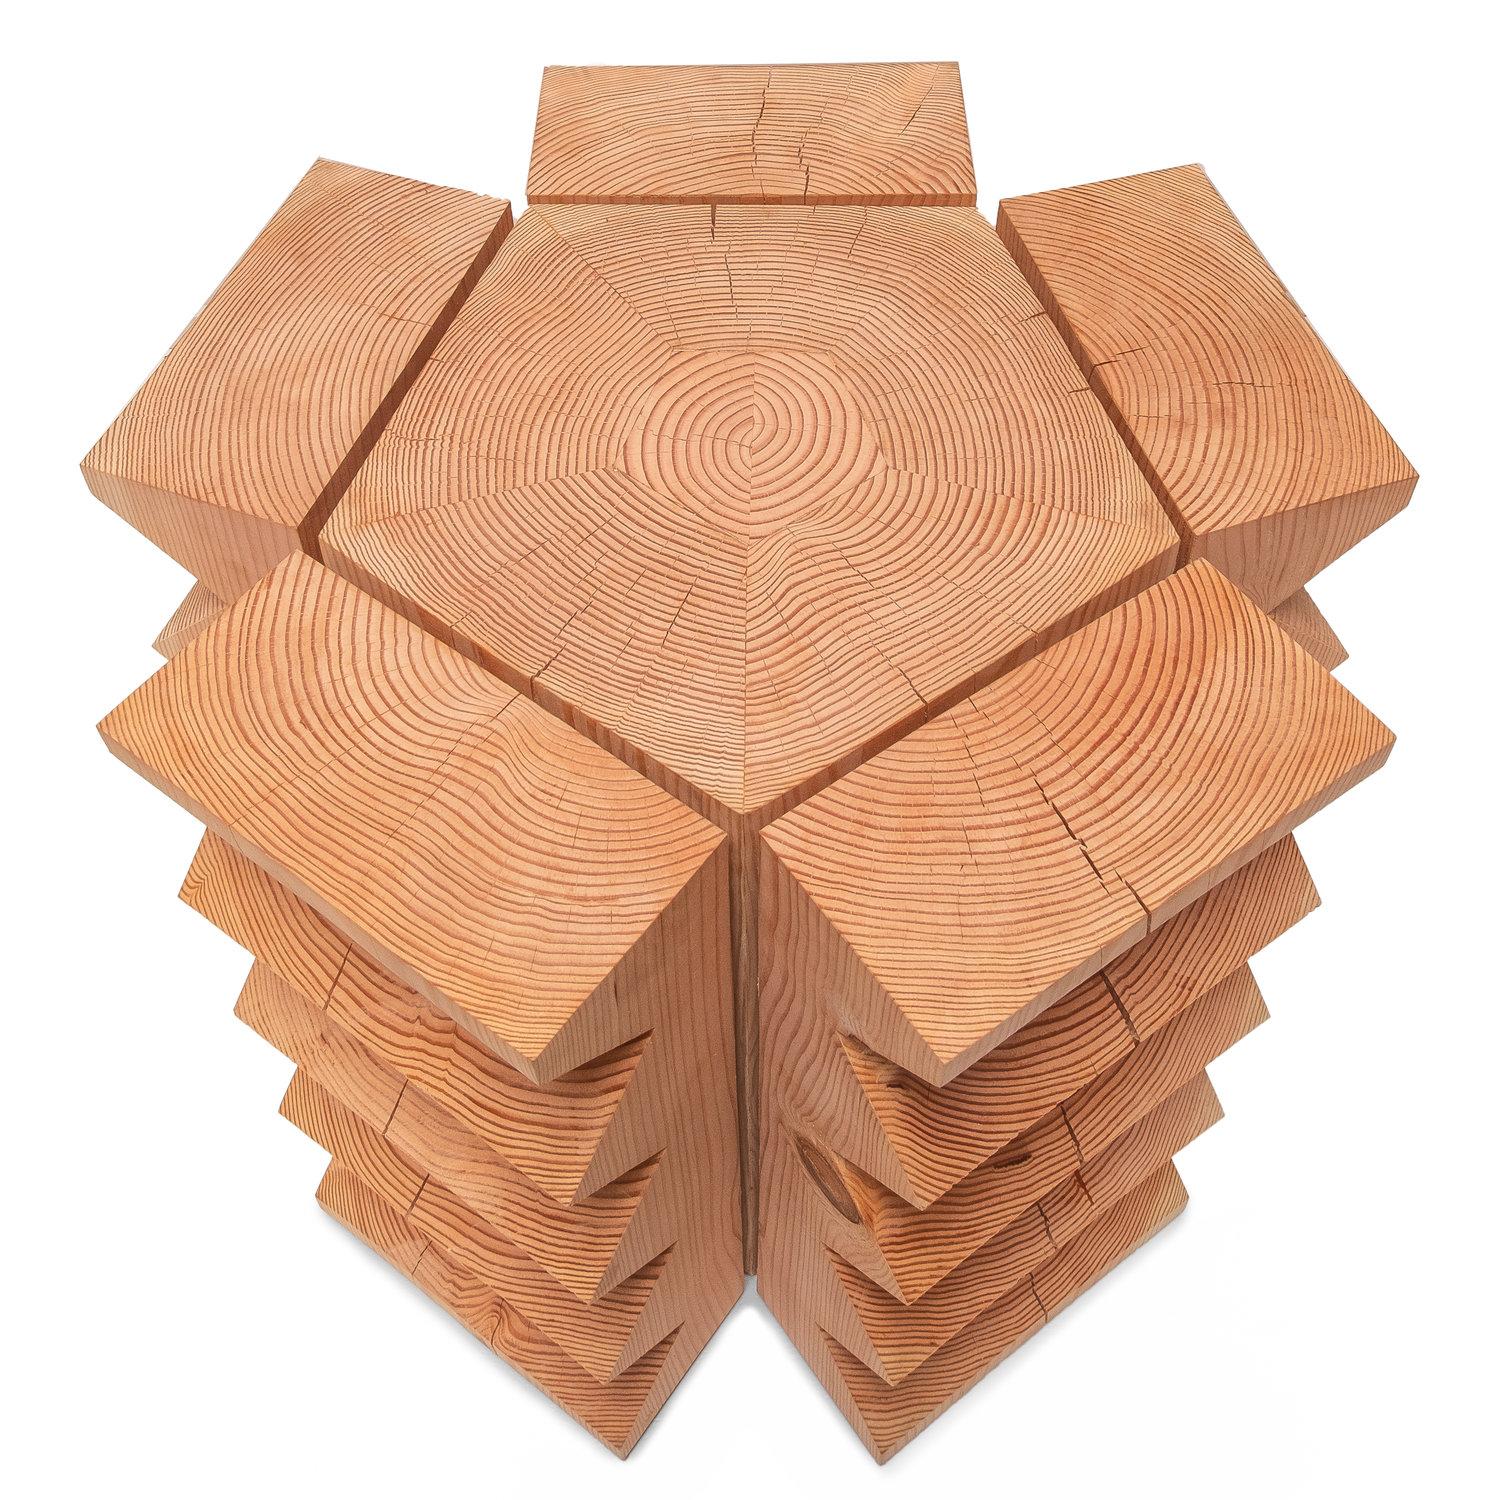 Brutalist Waveform Sun Stump Wood Carved Table by Bradley Duncan Studio For Sale